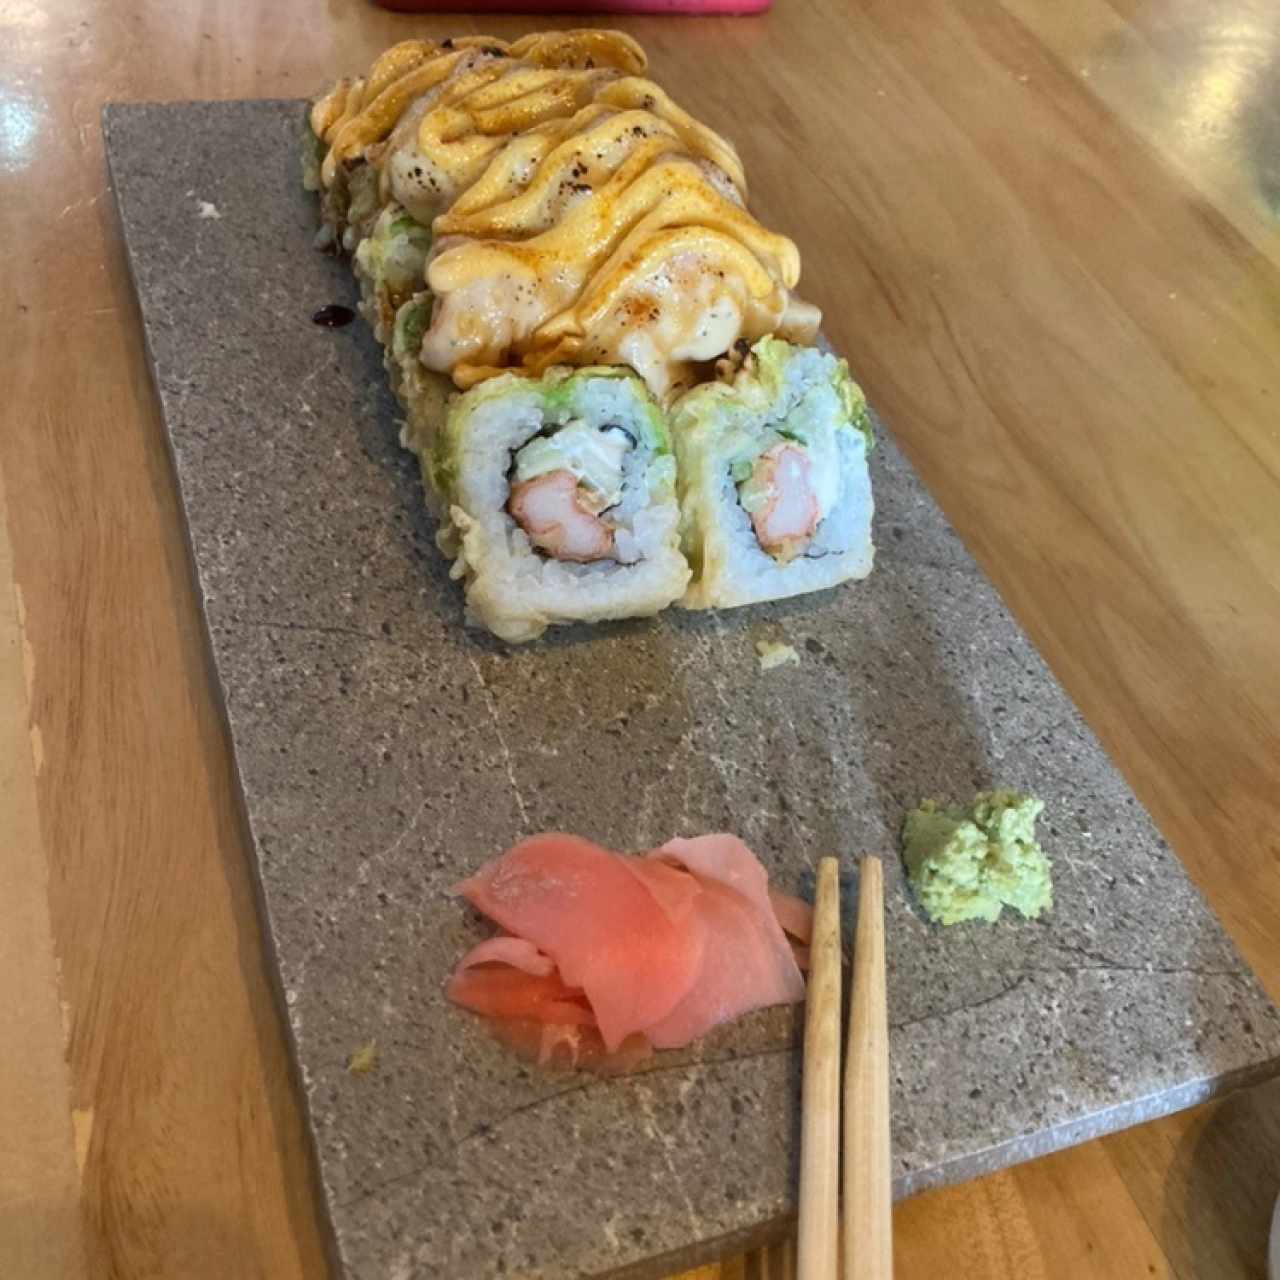 Tokubetsu Sushi - I Lob You